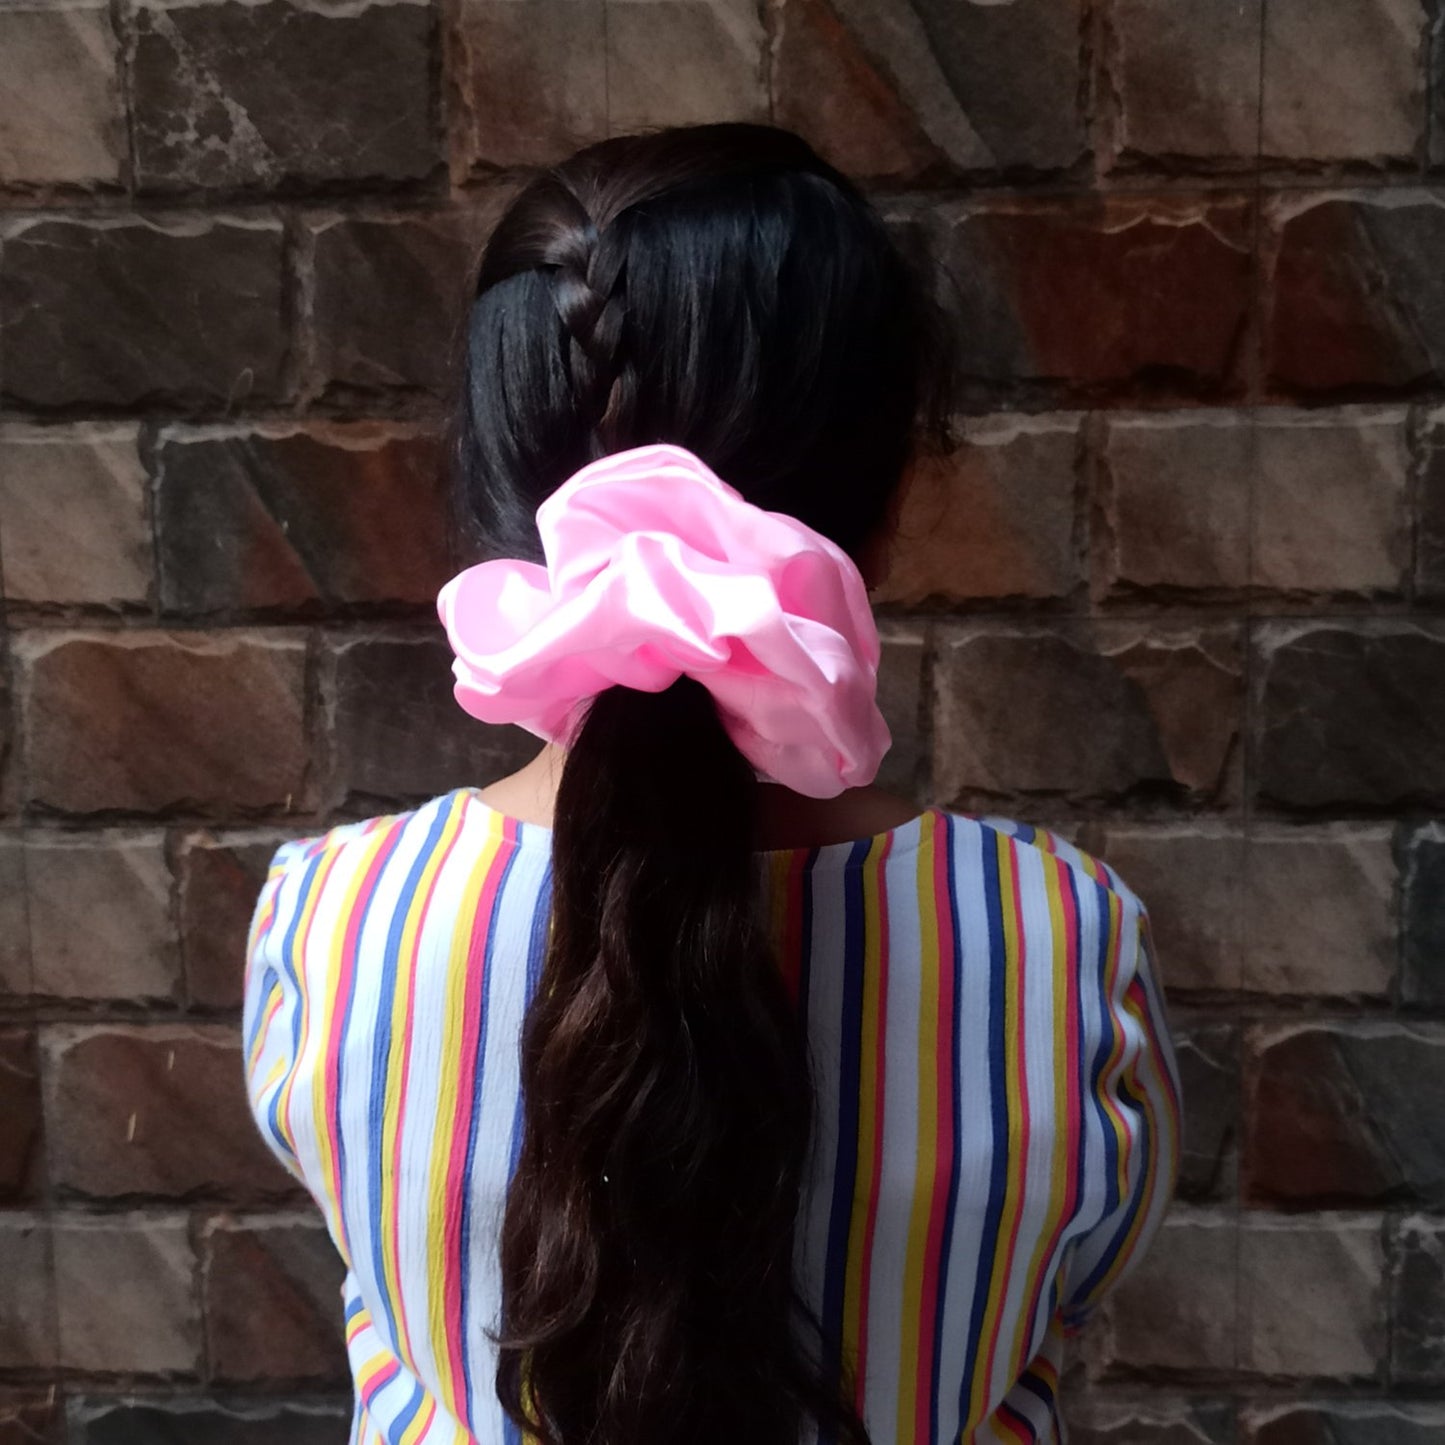 XXL Baby Pink Scrunchie (23-11 b Scrunchie)